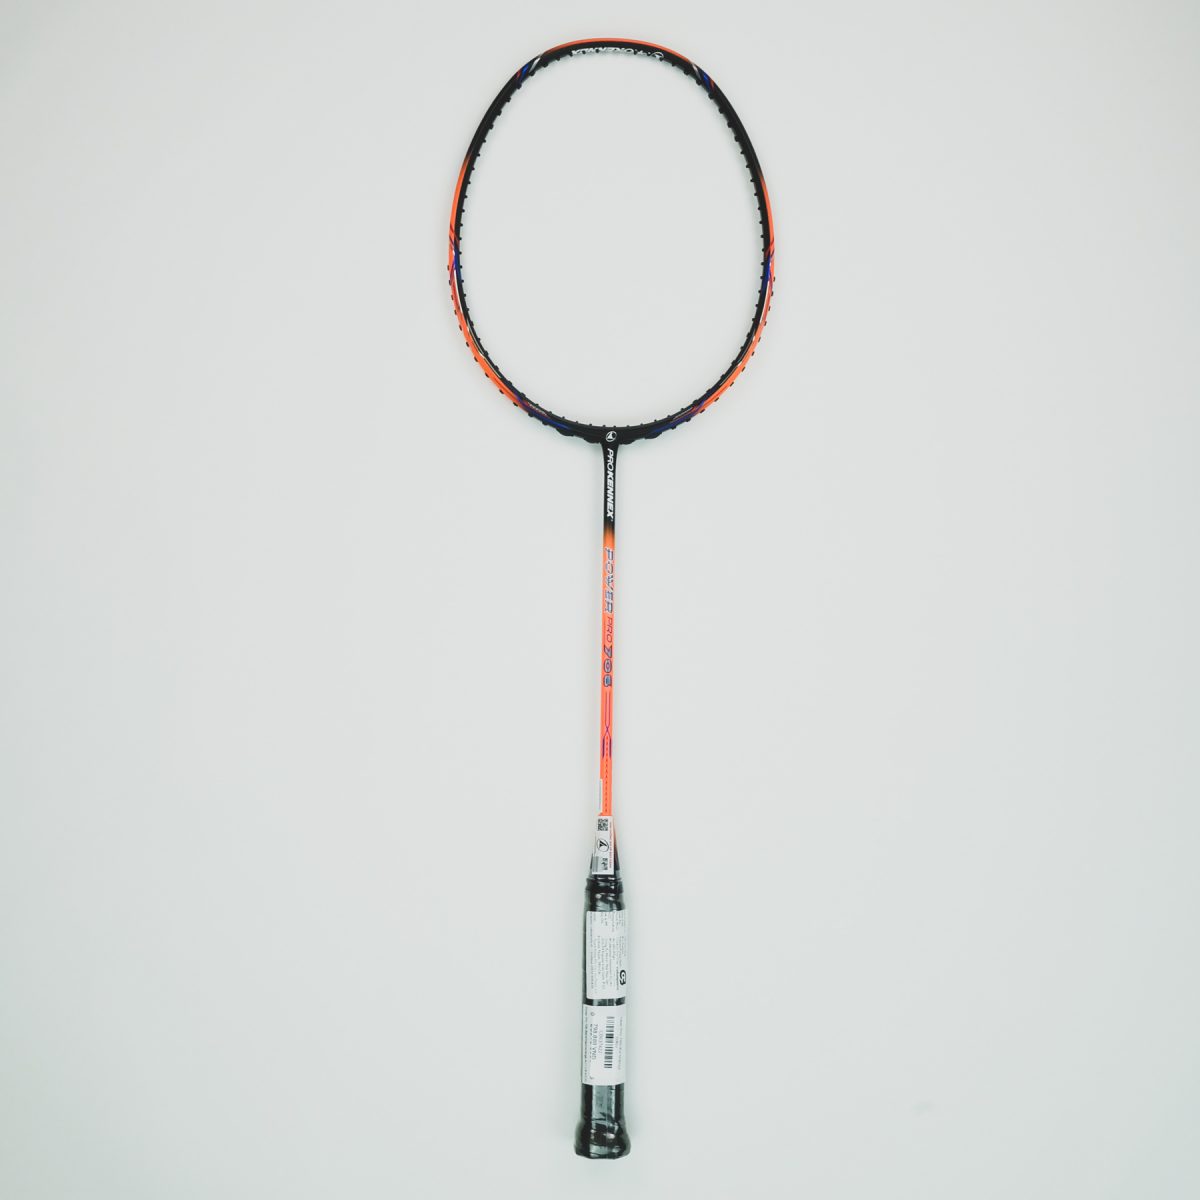 Nên lựa chọn vợt cầu lông giá rẻ Prokennex 706 tại Cabasports